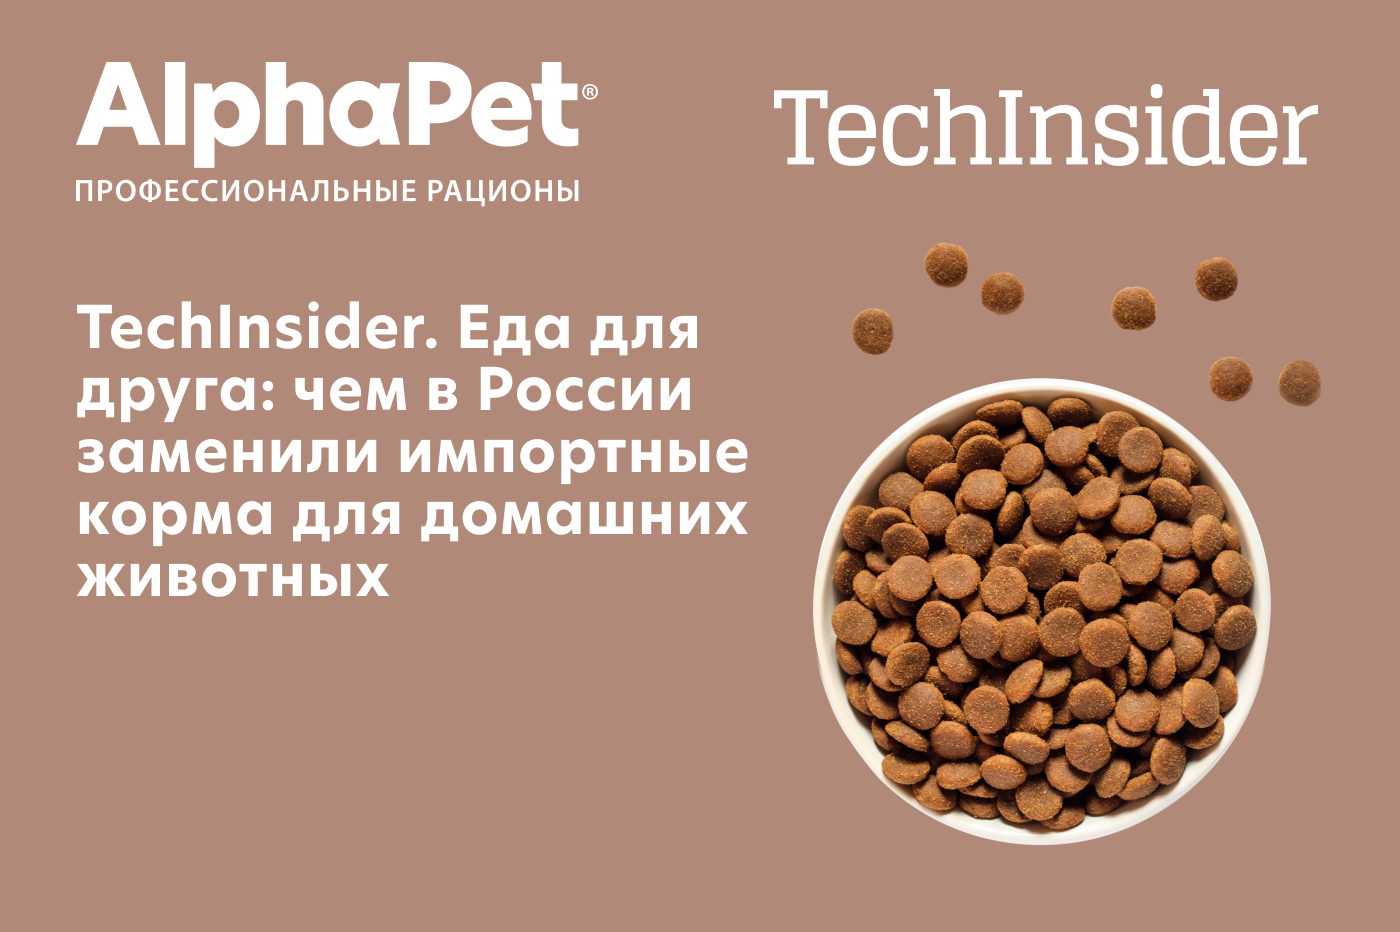 TechInsider -Еда для друга: чем в России заменили импортные корма для домашних животных